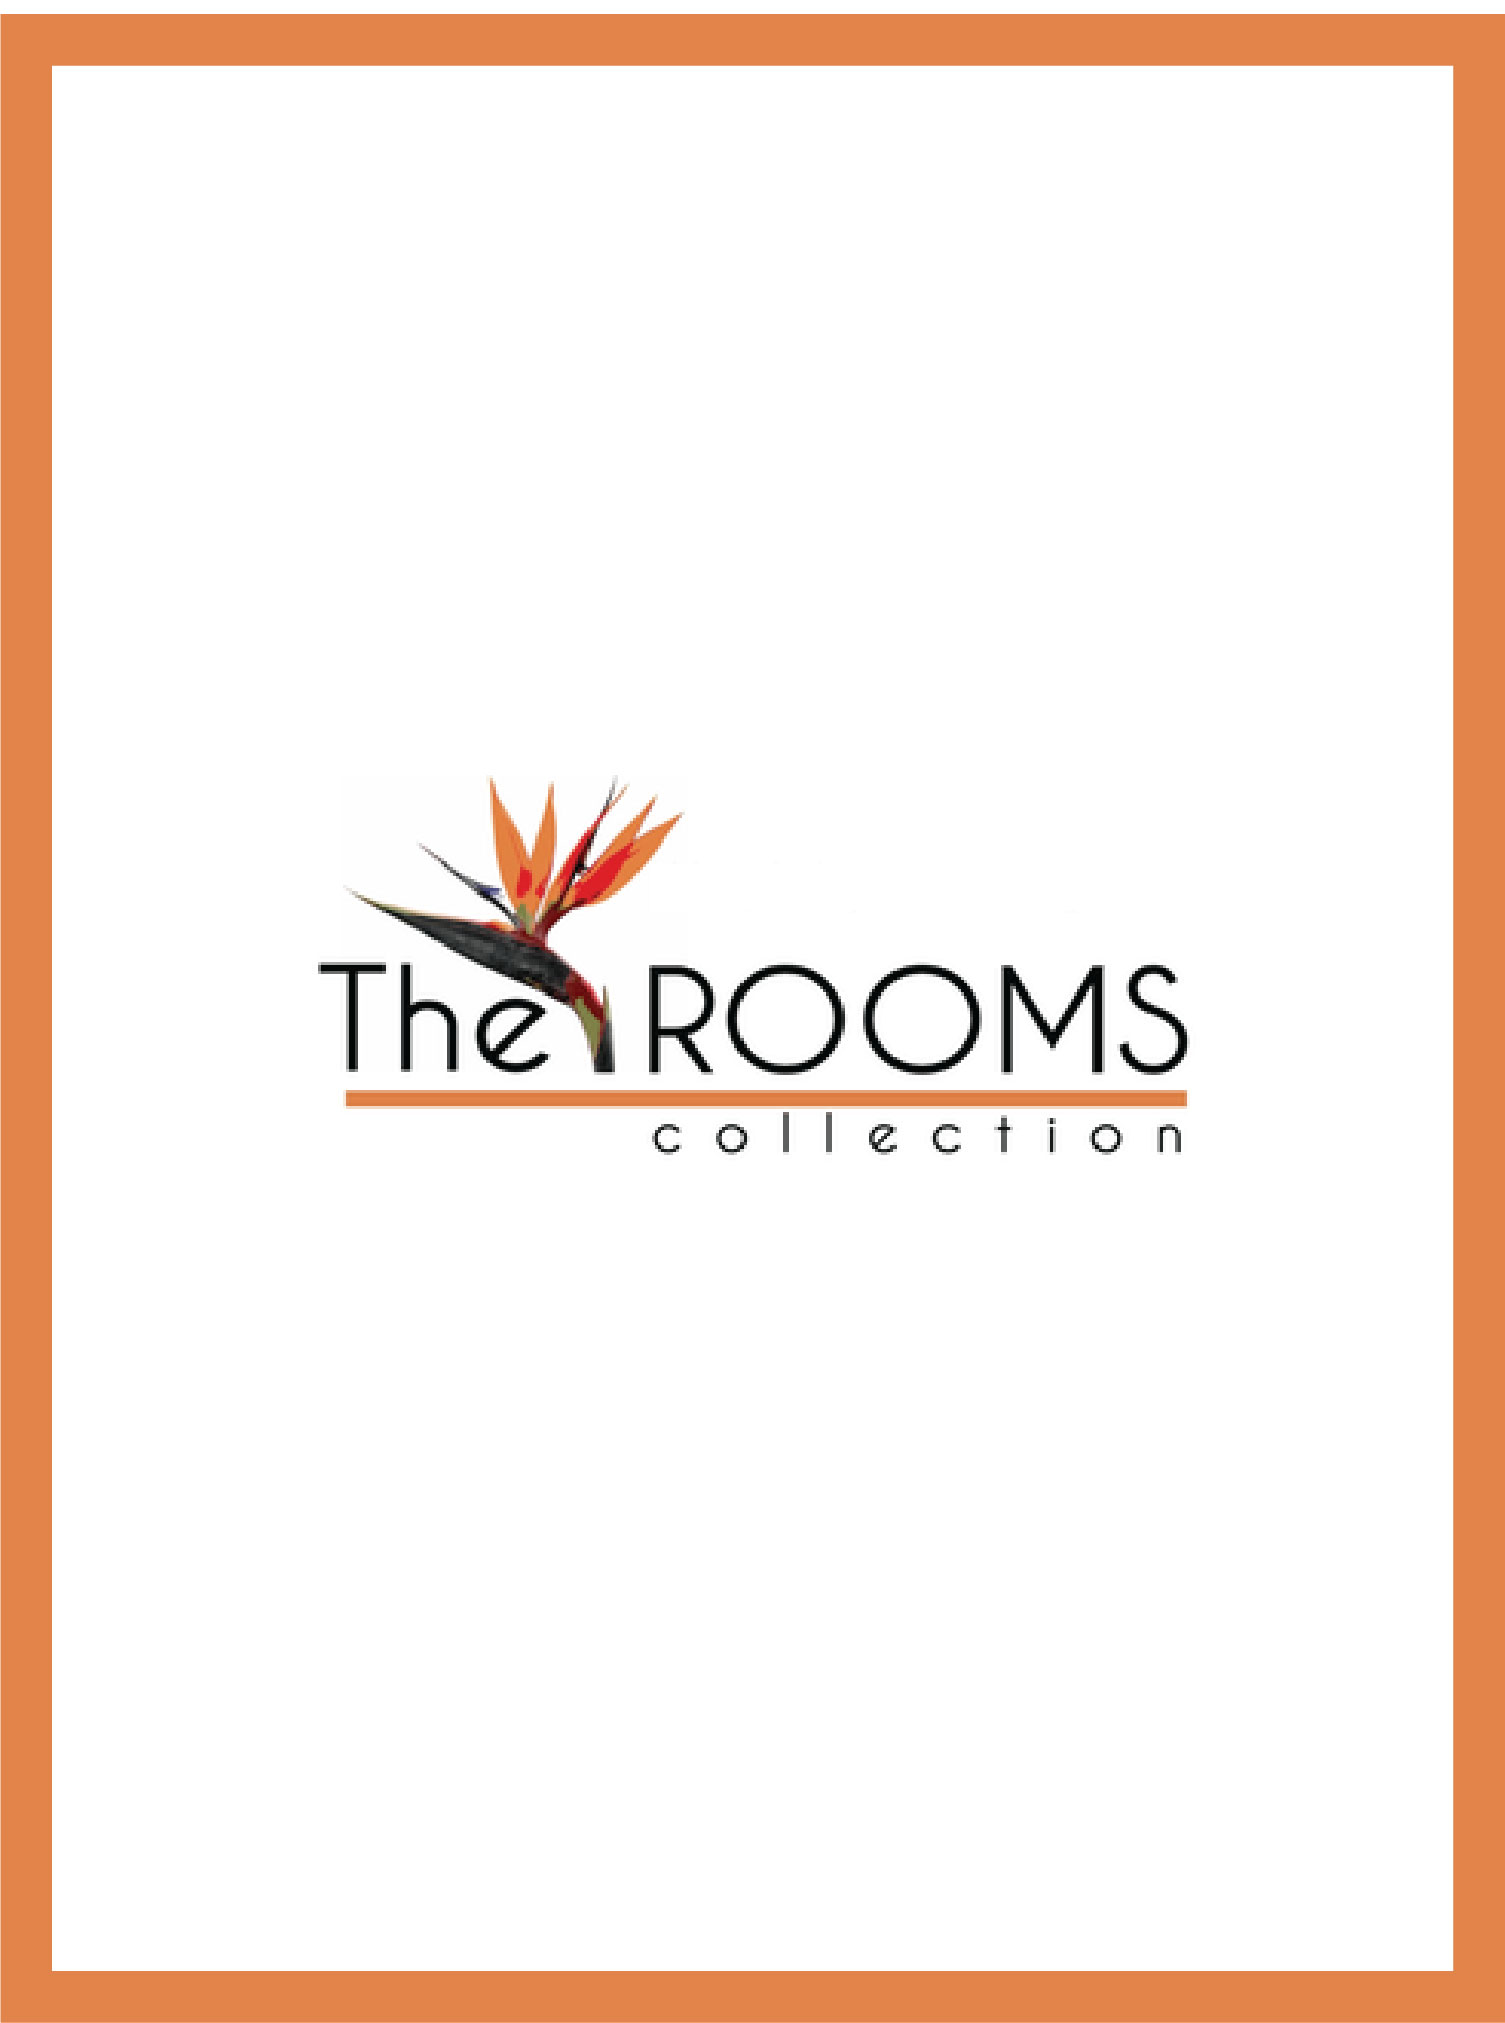 couverture et logo du magazine the rooms collection